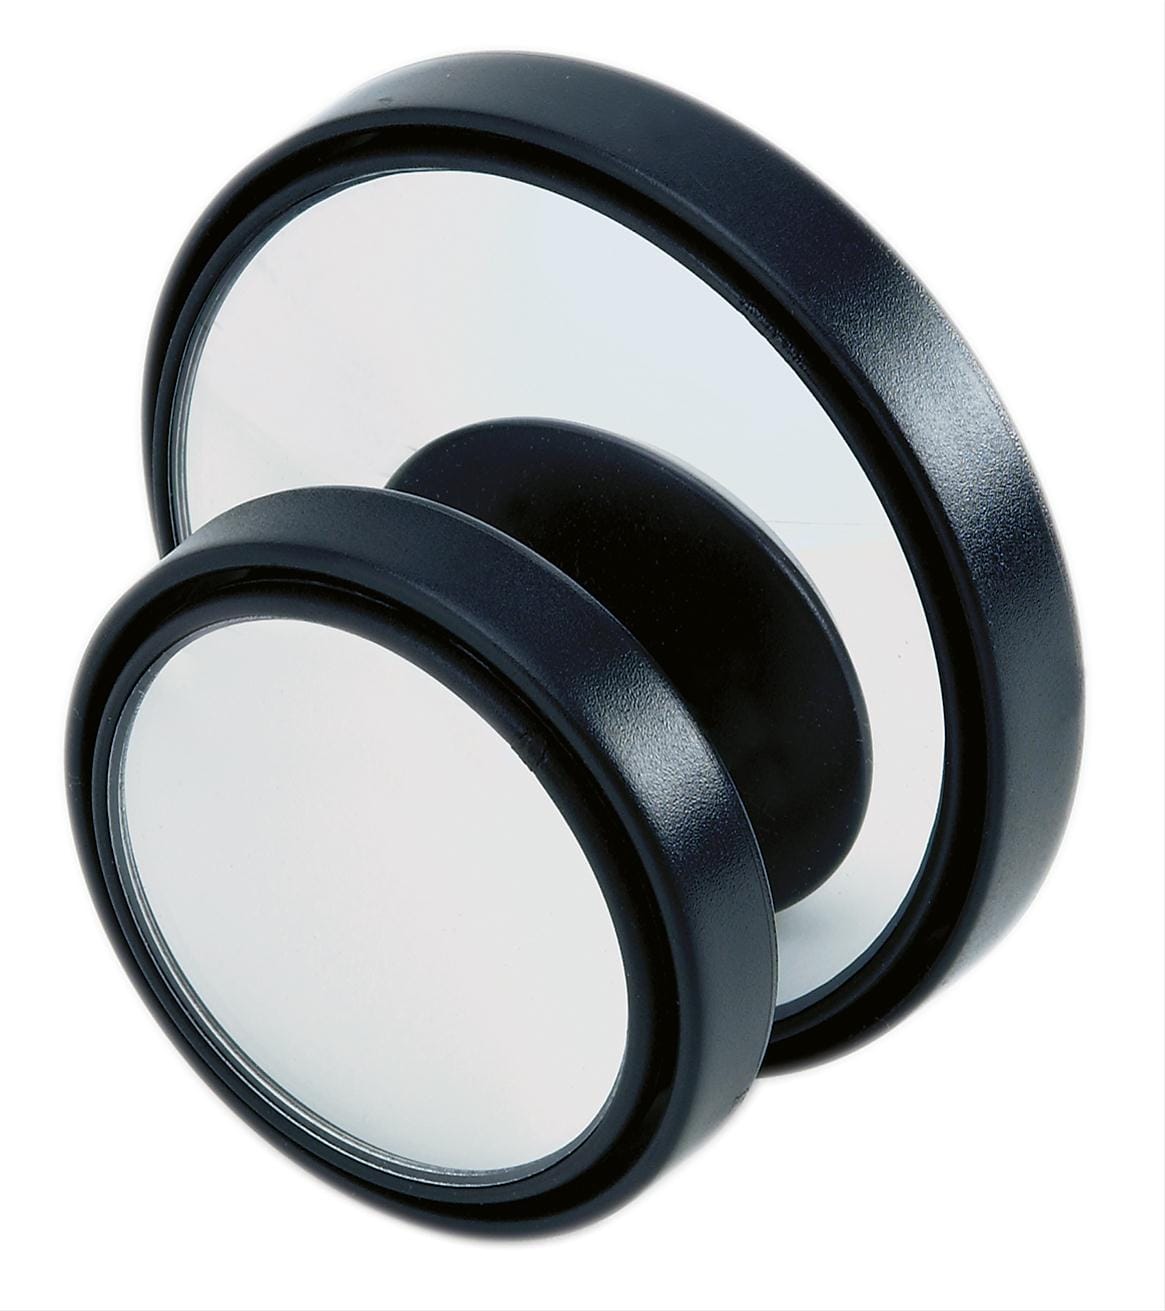 K Source C0200 - 2" Round Convex Adjustable Blind Spot Mirror